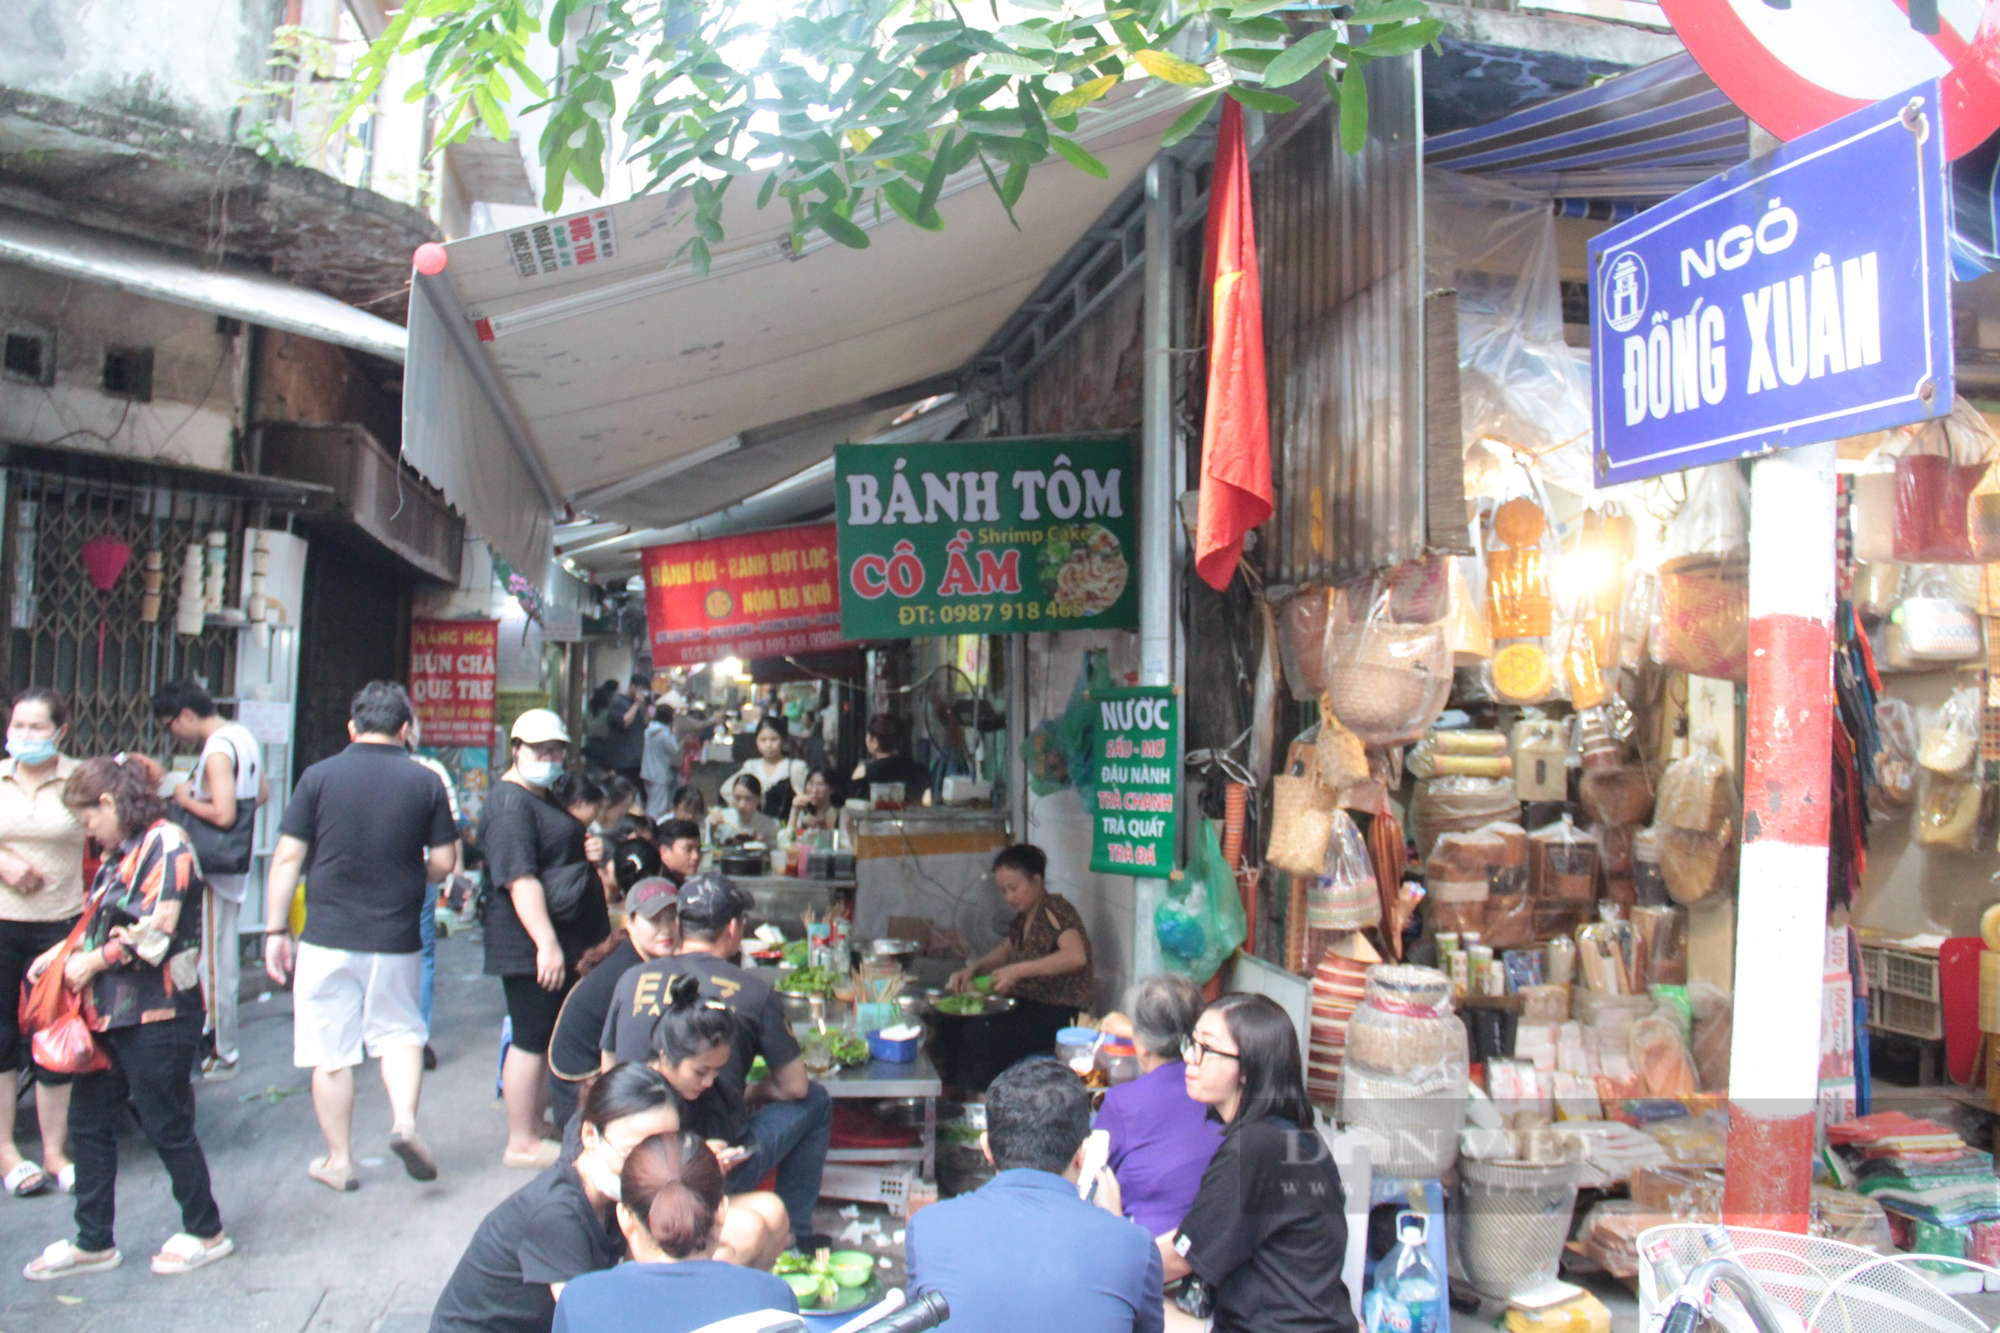 Khám phá “siêu ngõ ẩm thực” chật kín khách ở phố cổ Hà Nội - Ảnh 1.